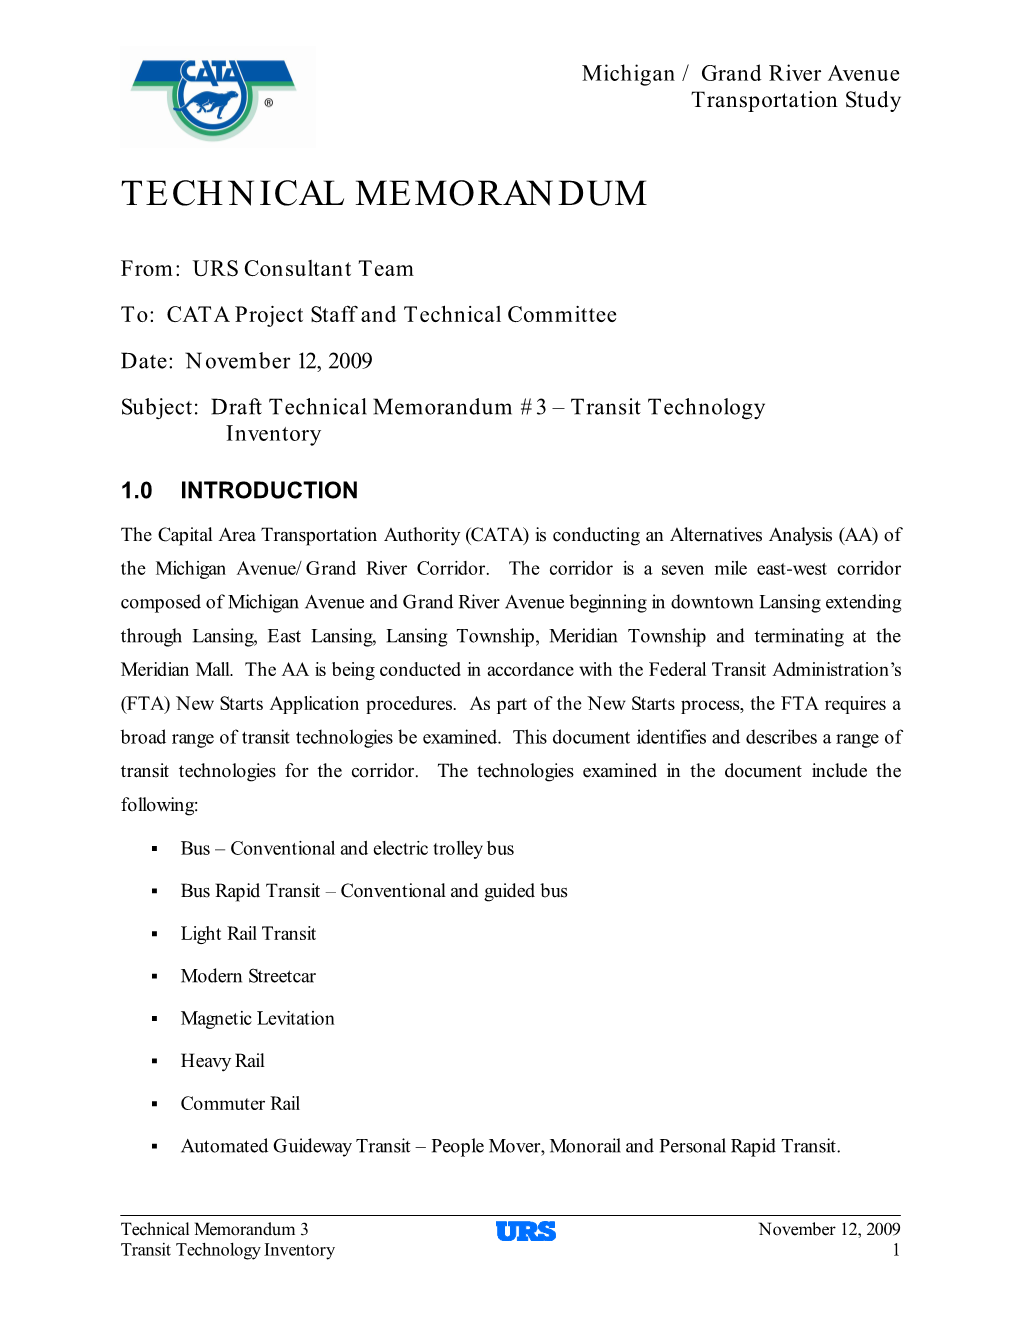 Technical Memorandum